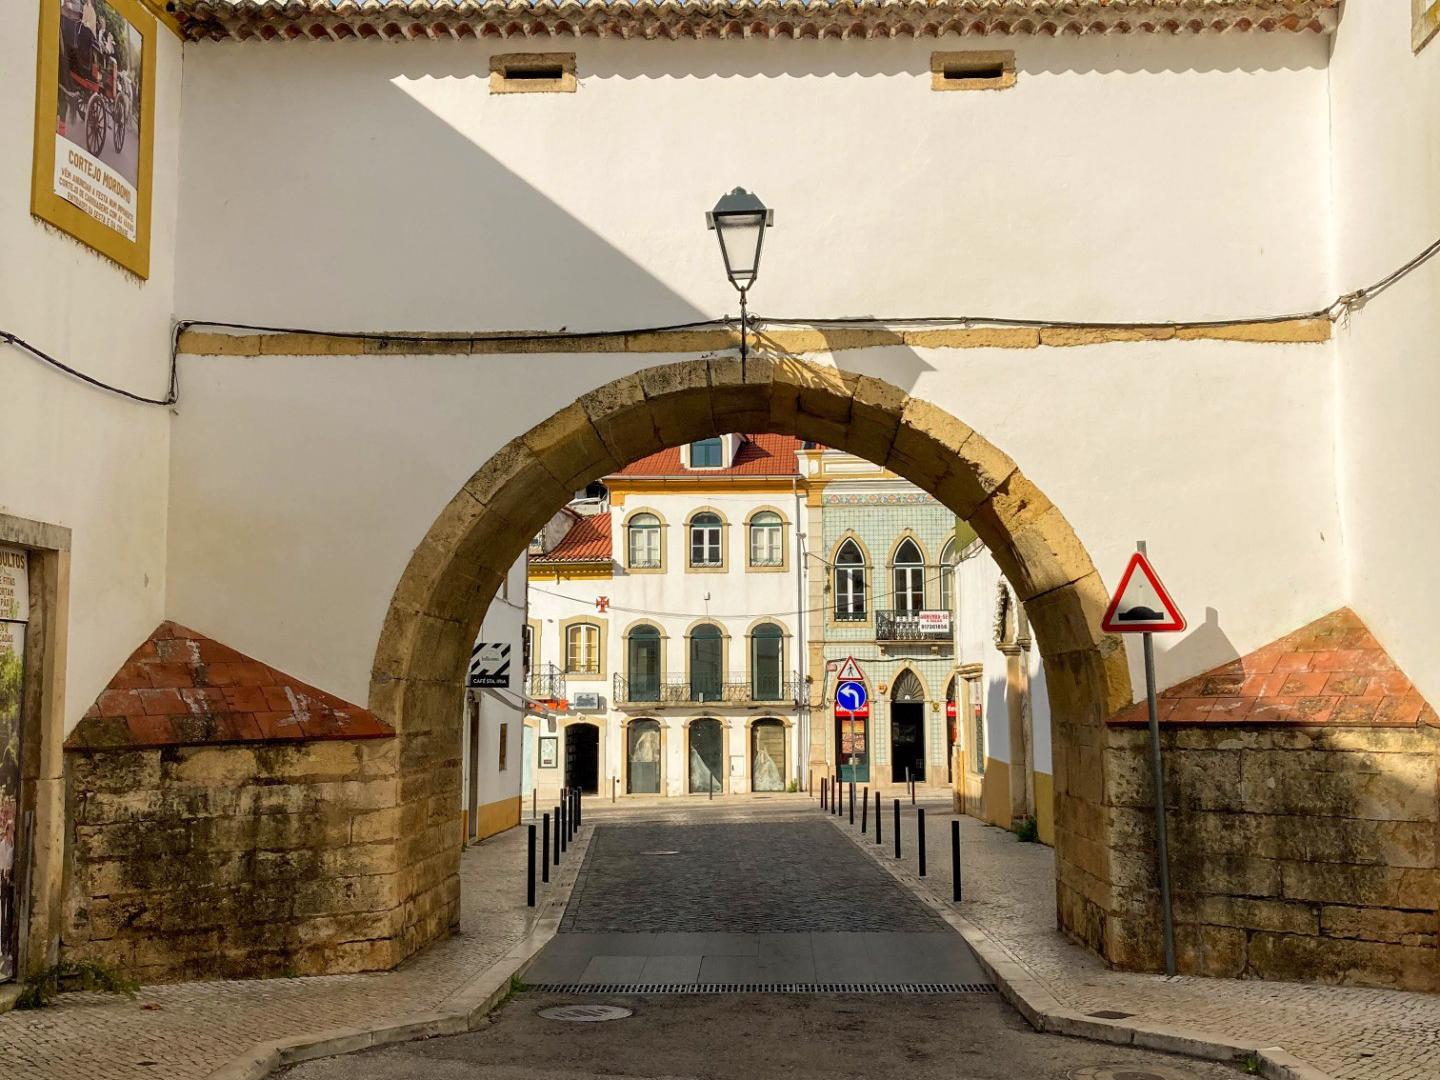 Enquadramento - O Arco das Freiras, em Tomar, é um arco de volta inteira sobre a Rua de Santa Iria, que é uma passagem aérea que liga o Convento de Santa Iria ao antigo Palácio de Frei António de Lisboa. A sua origem remonta ao século XVI.